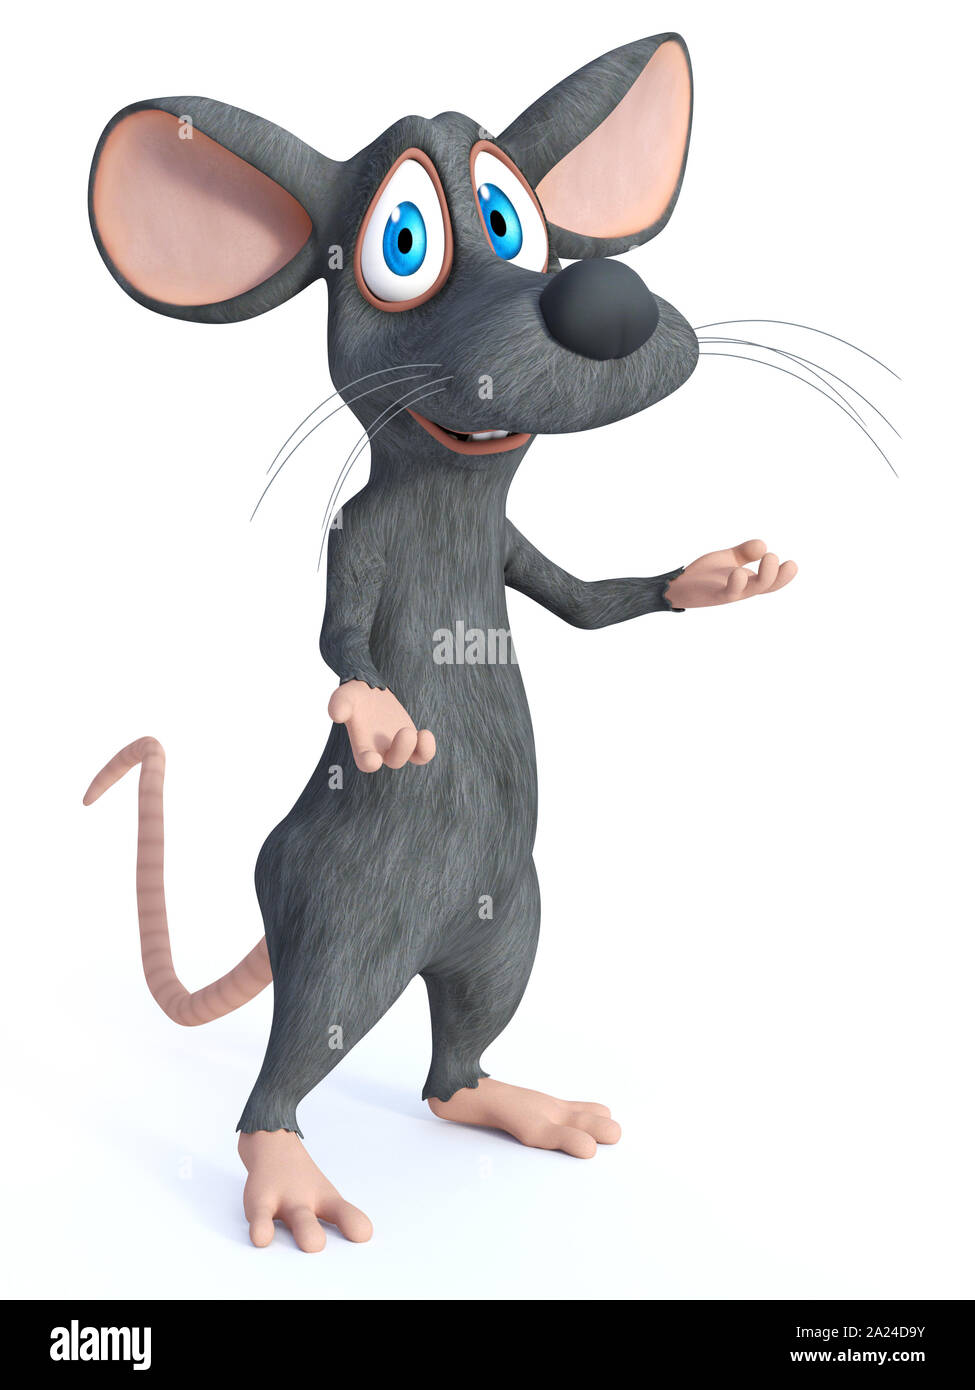 Le rendu 3D d'un dessin animé mignon sourire permanent de la souris avec ses bras tendus dans un cadre accueillant posent comme il est dit ou vous souhaits tada. Bac blanc Banque D'Images